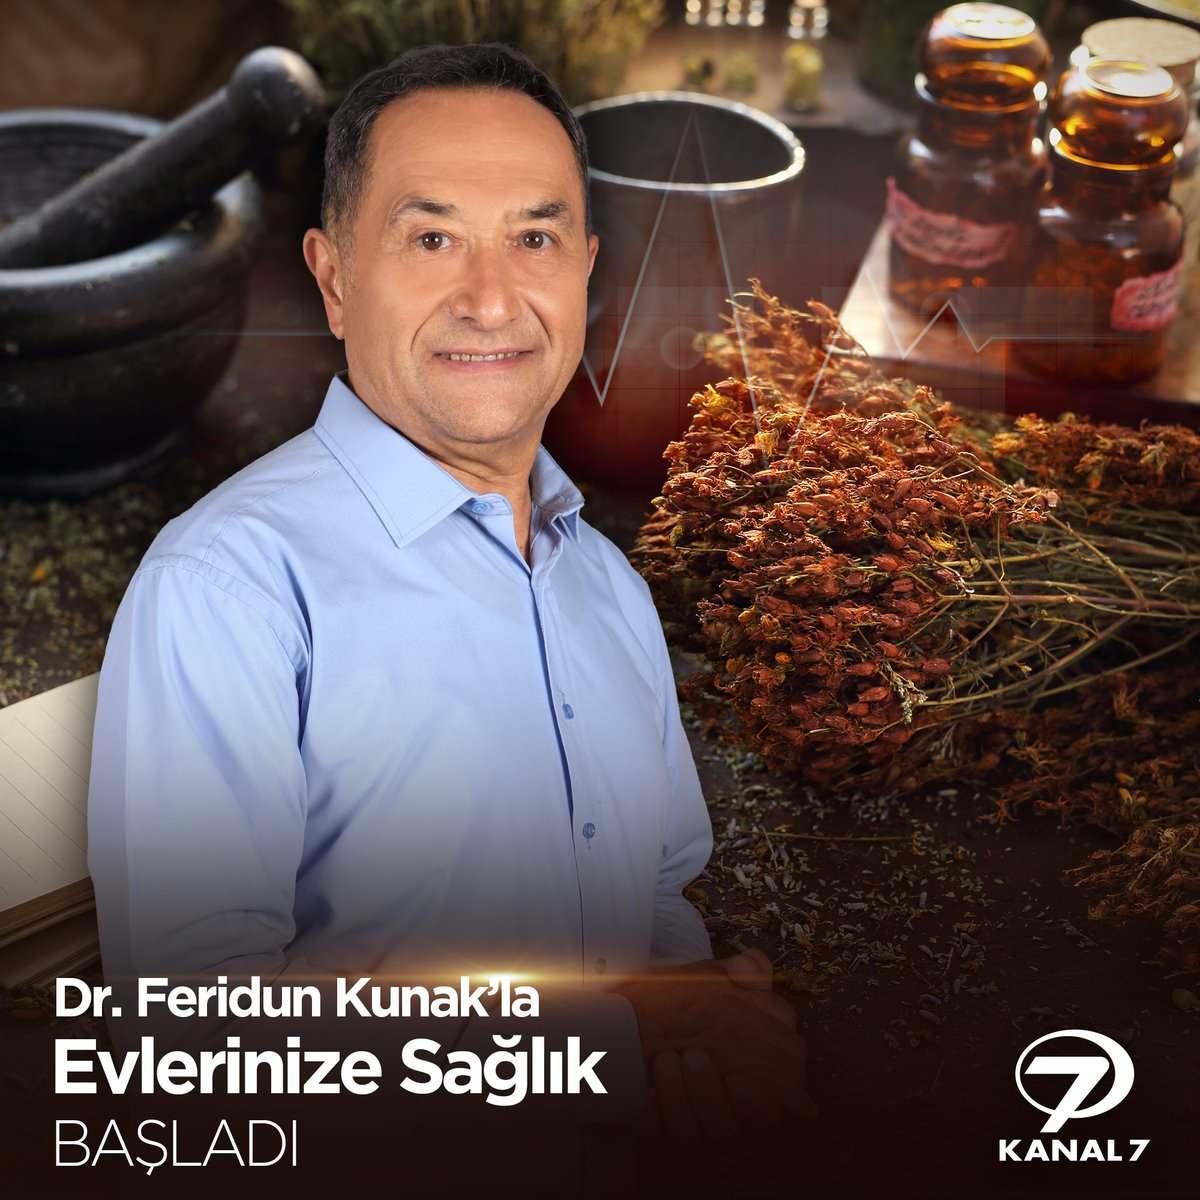 Op. Dr. Feridun Kunak, Kanal7 ekranlarında